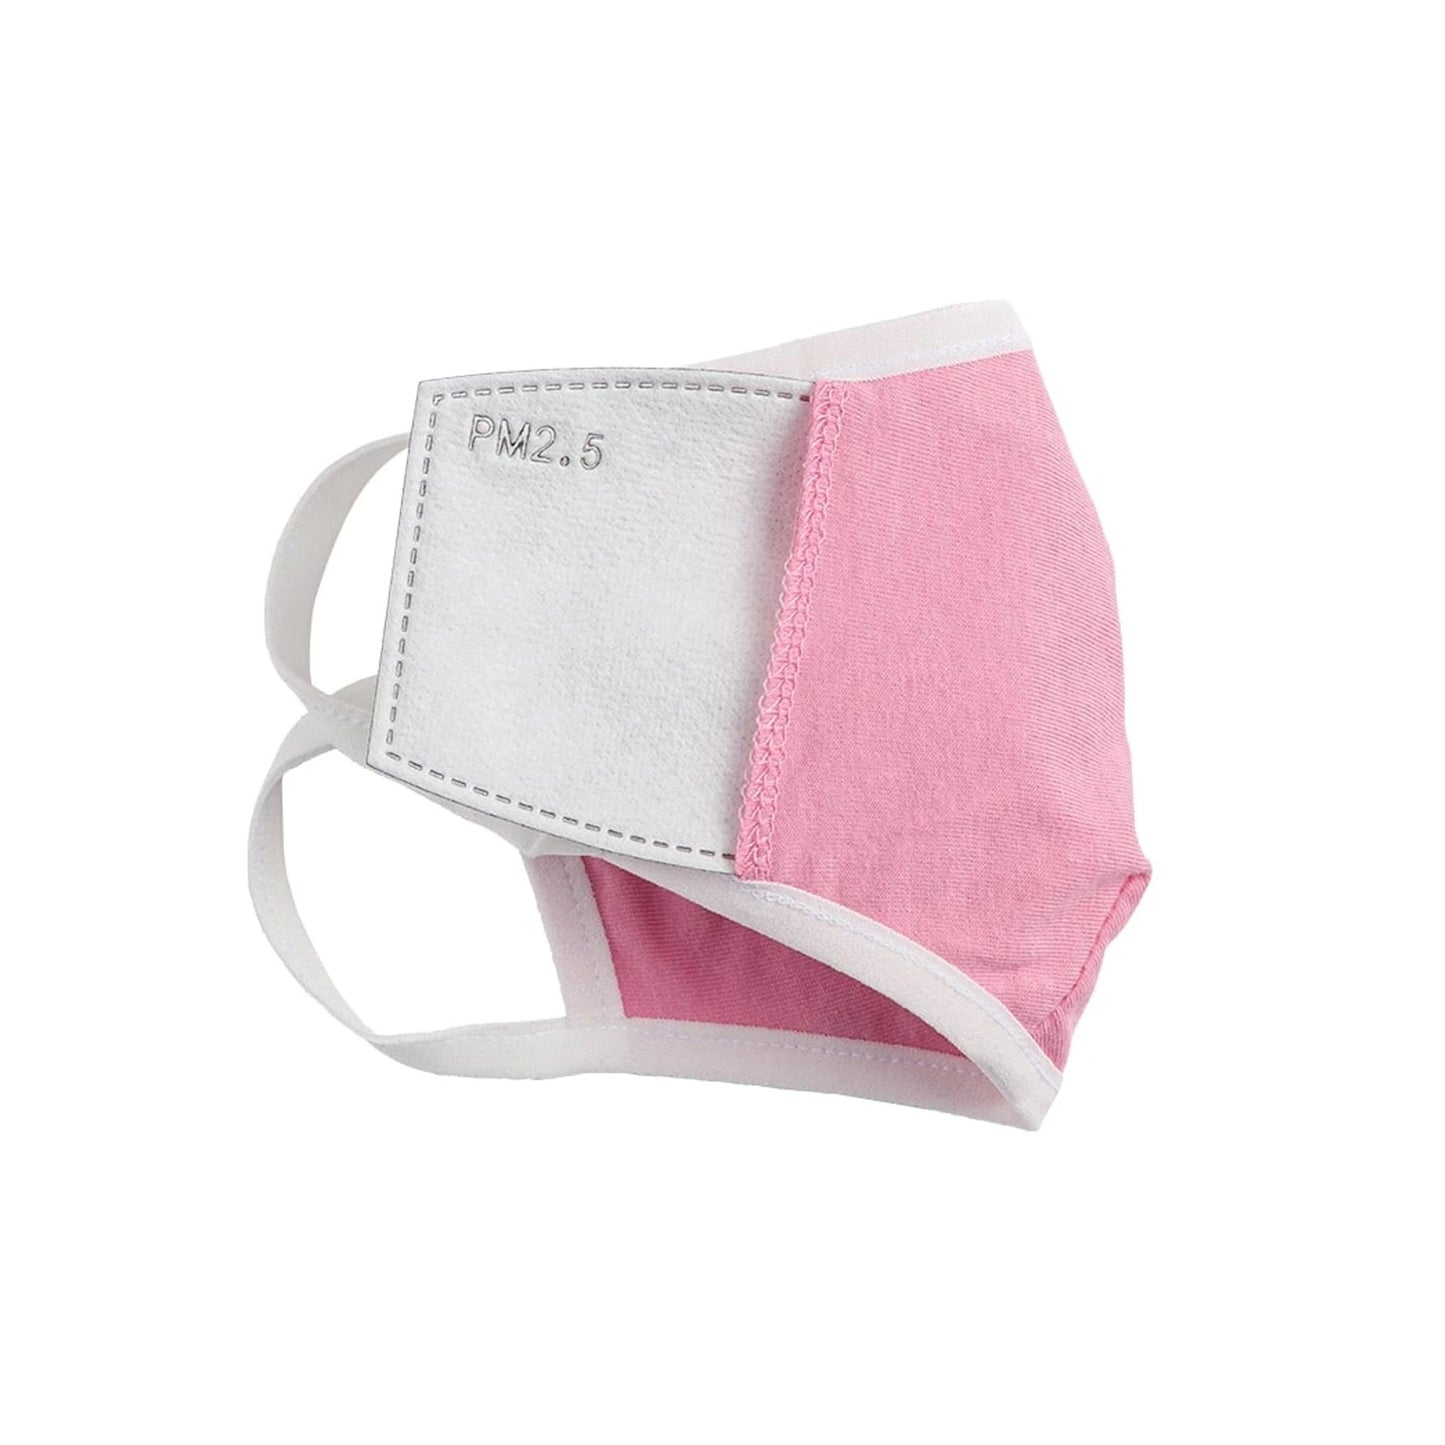 Bulk - Safe+Mate Pink Washable Kids 7-11 Cloth Face Mask -3pk (bulk packaging) - 15-08013